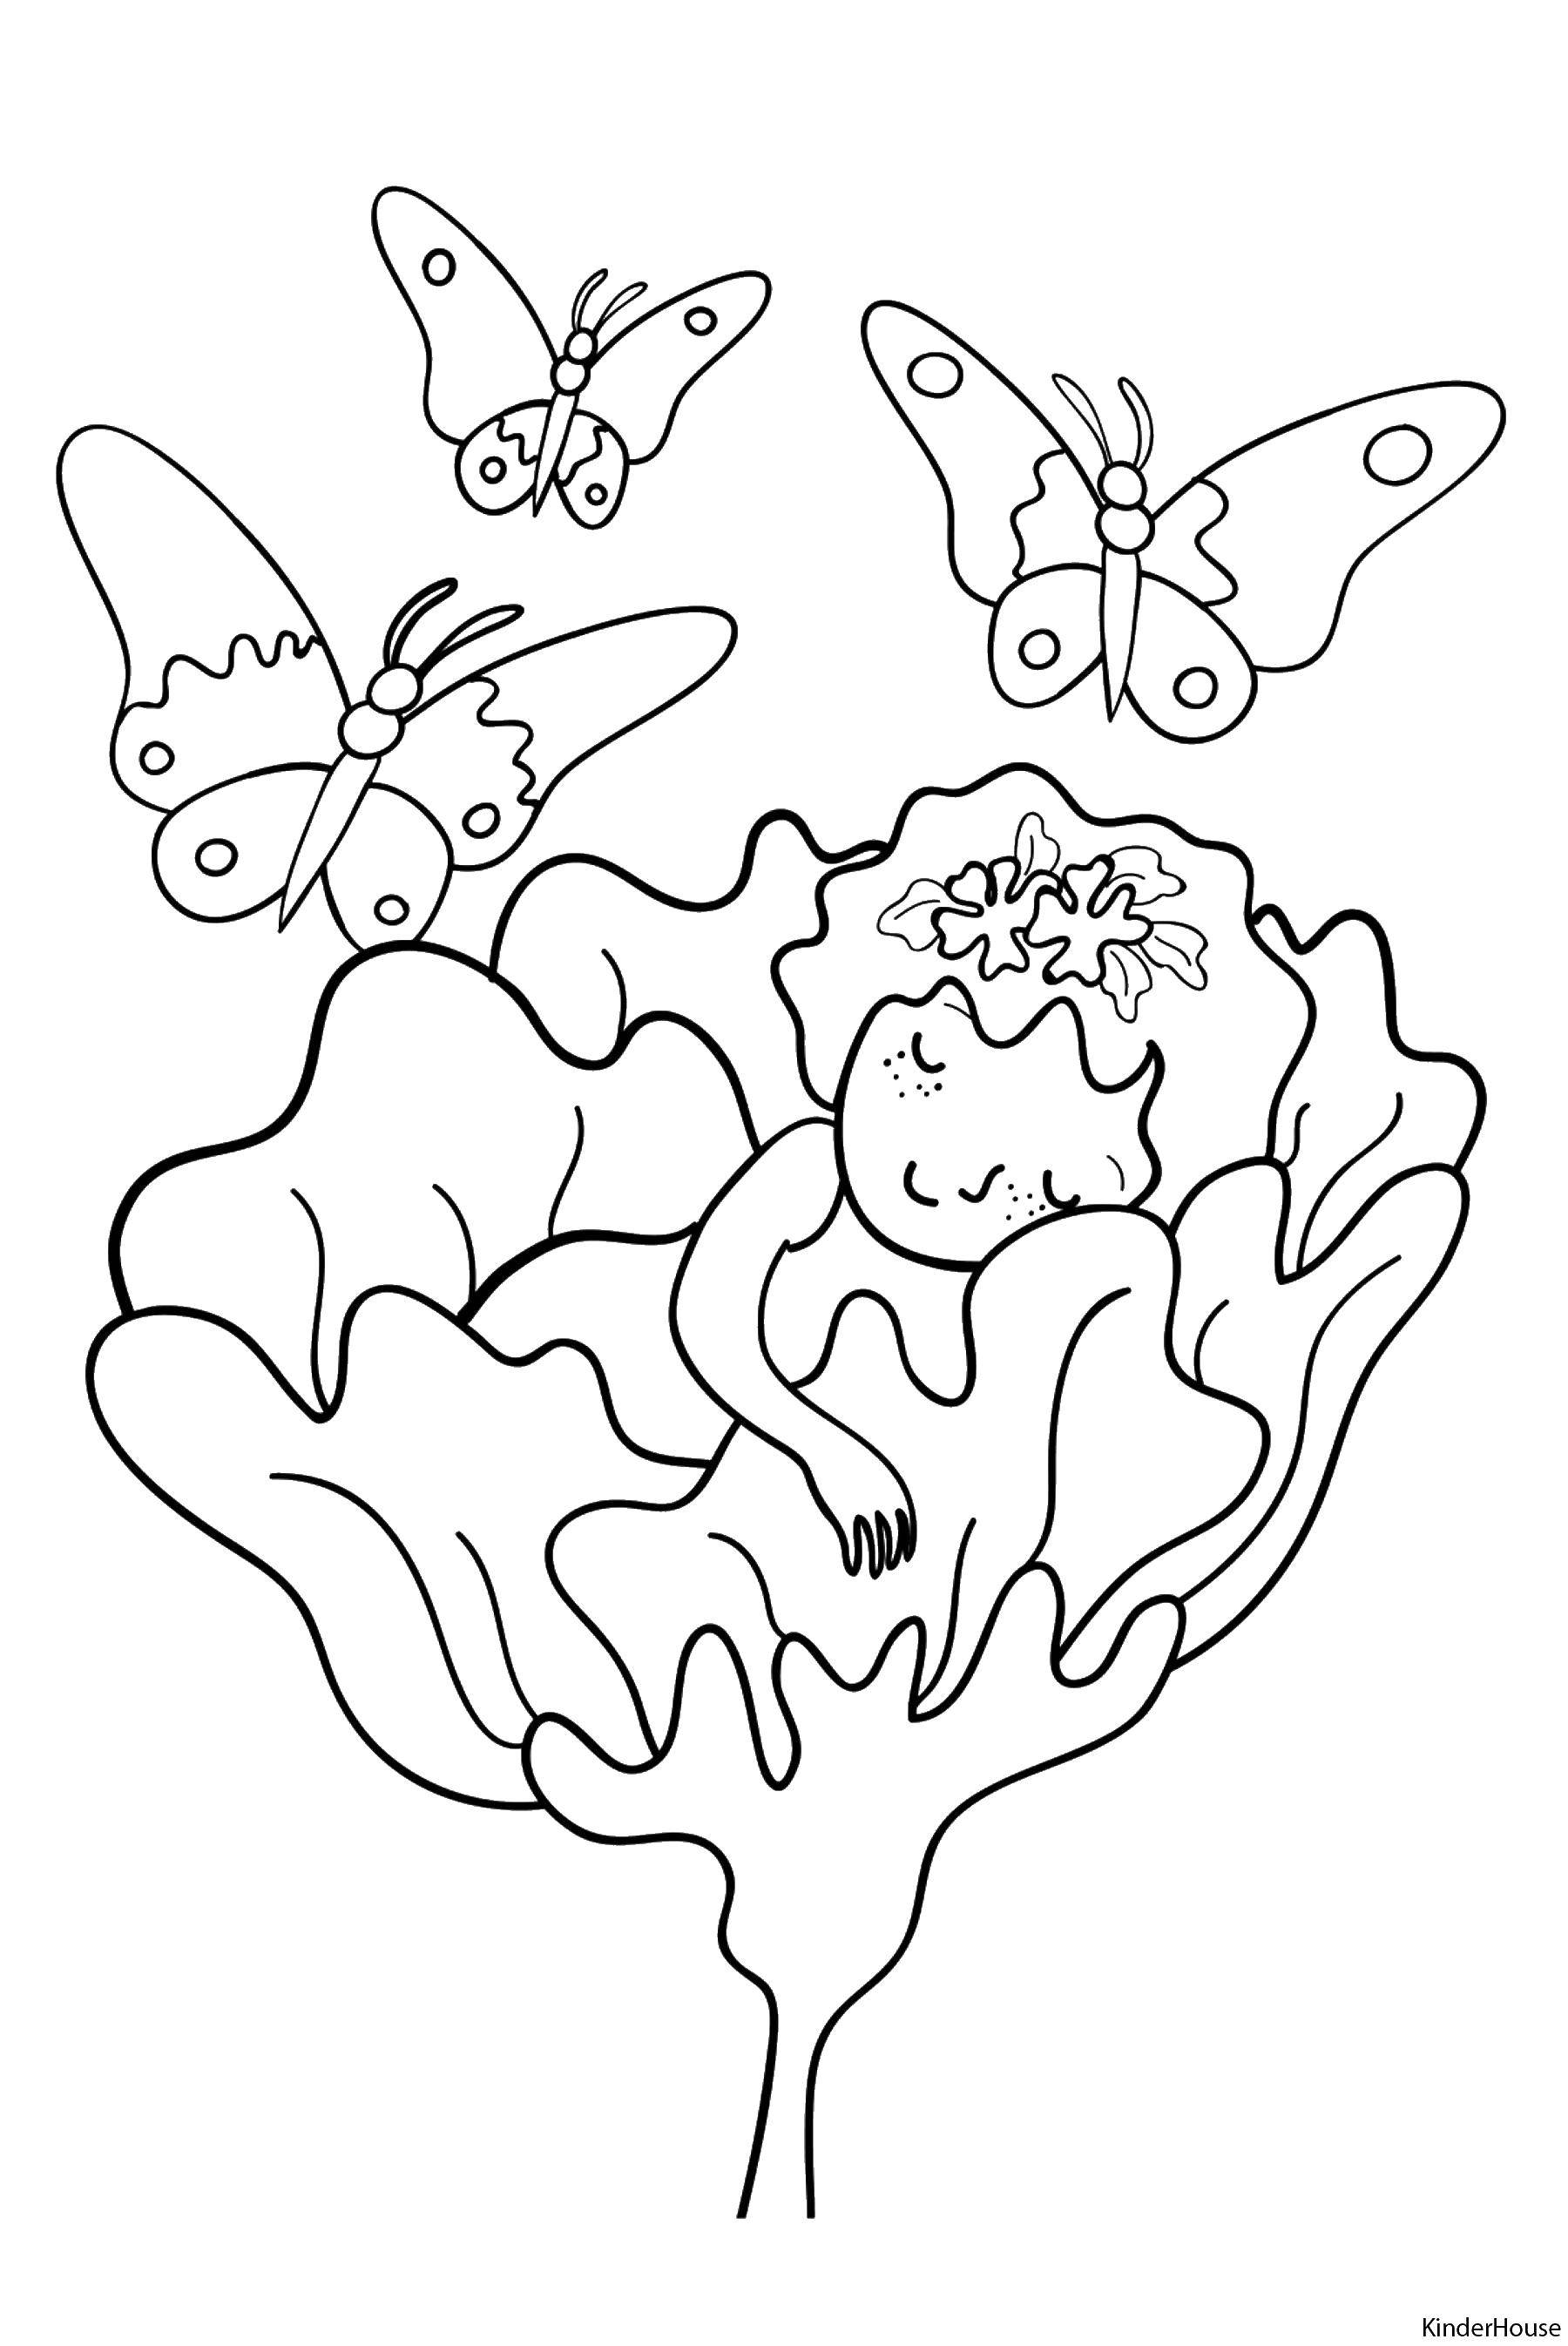 Раскраска Дюймовочка в своем любимом цветке